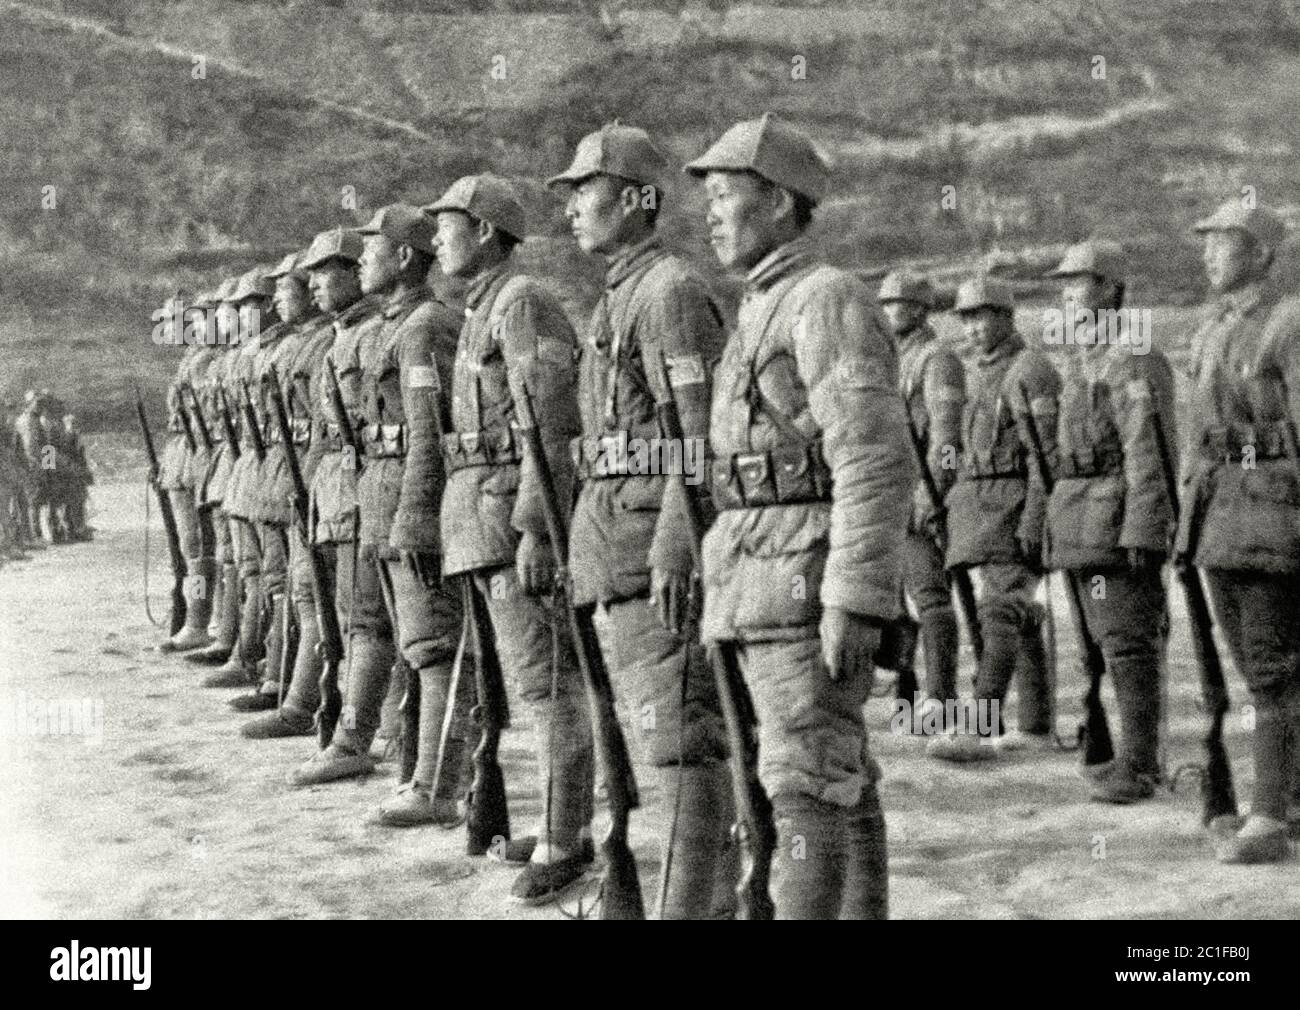 Soldaten der chinesischen kommunistischen Achten Route Armee auf dem Bohrfeld in Yanan, der Hauptstadt eines riesigen Gebietes in Nordchina, das von den Chines regiert wird Stockfoto